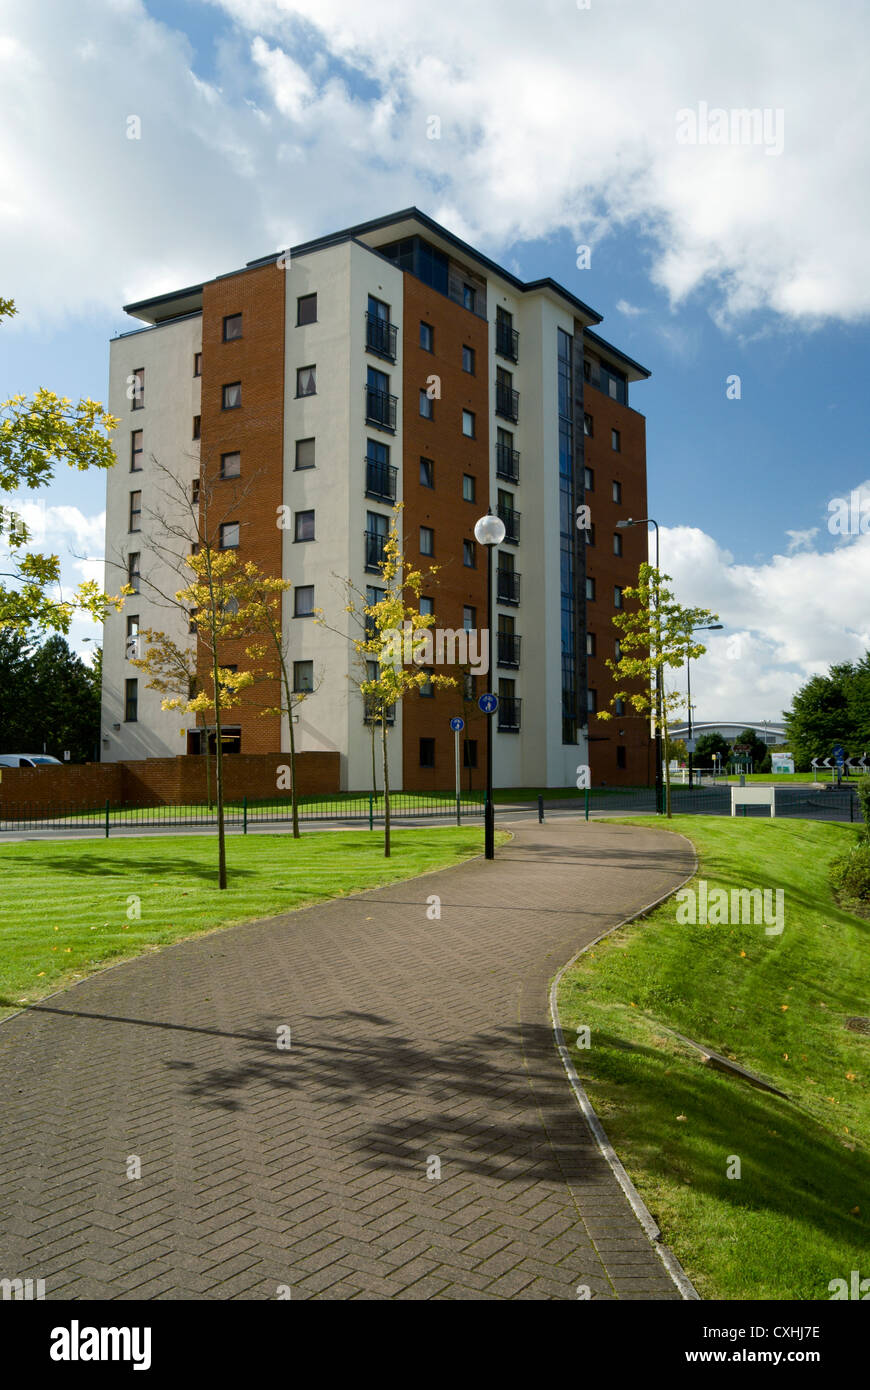 Bloc d'appartements de la baie de Cardiff Wales UK Banque D'Images